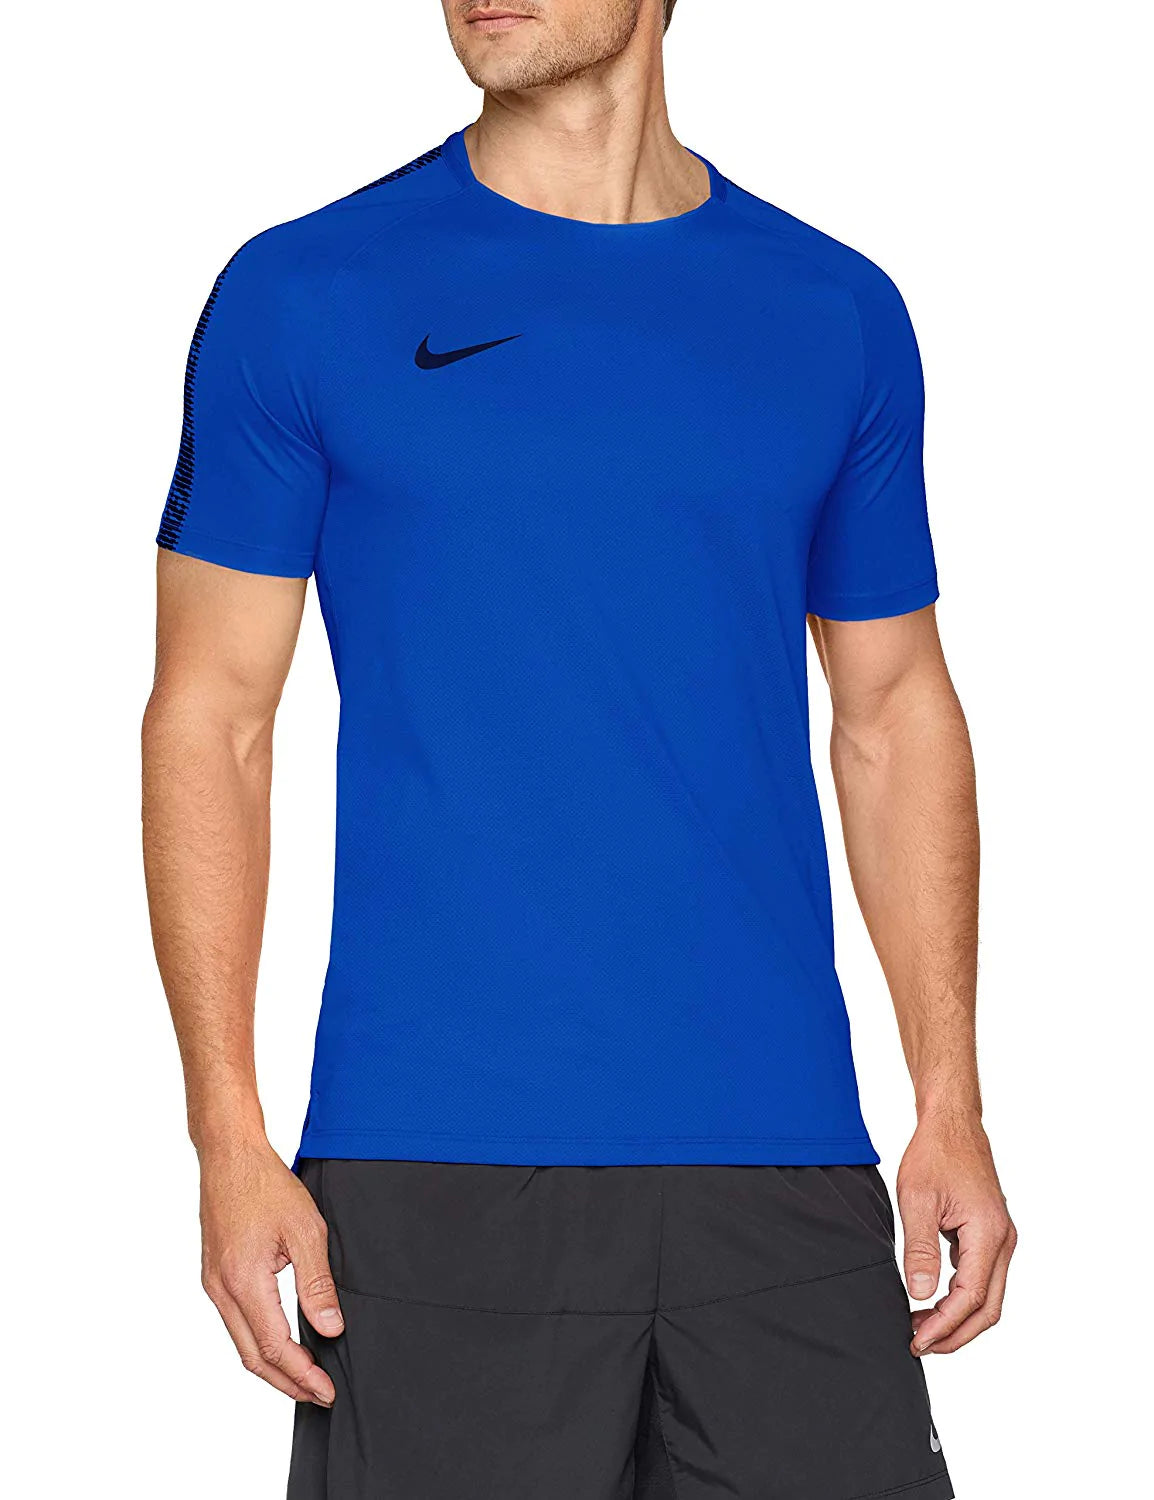 Benigno quiero El principio Mens Nike Breathe Squad Top 894539-405 – Sports Clothing Yorkshire